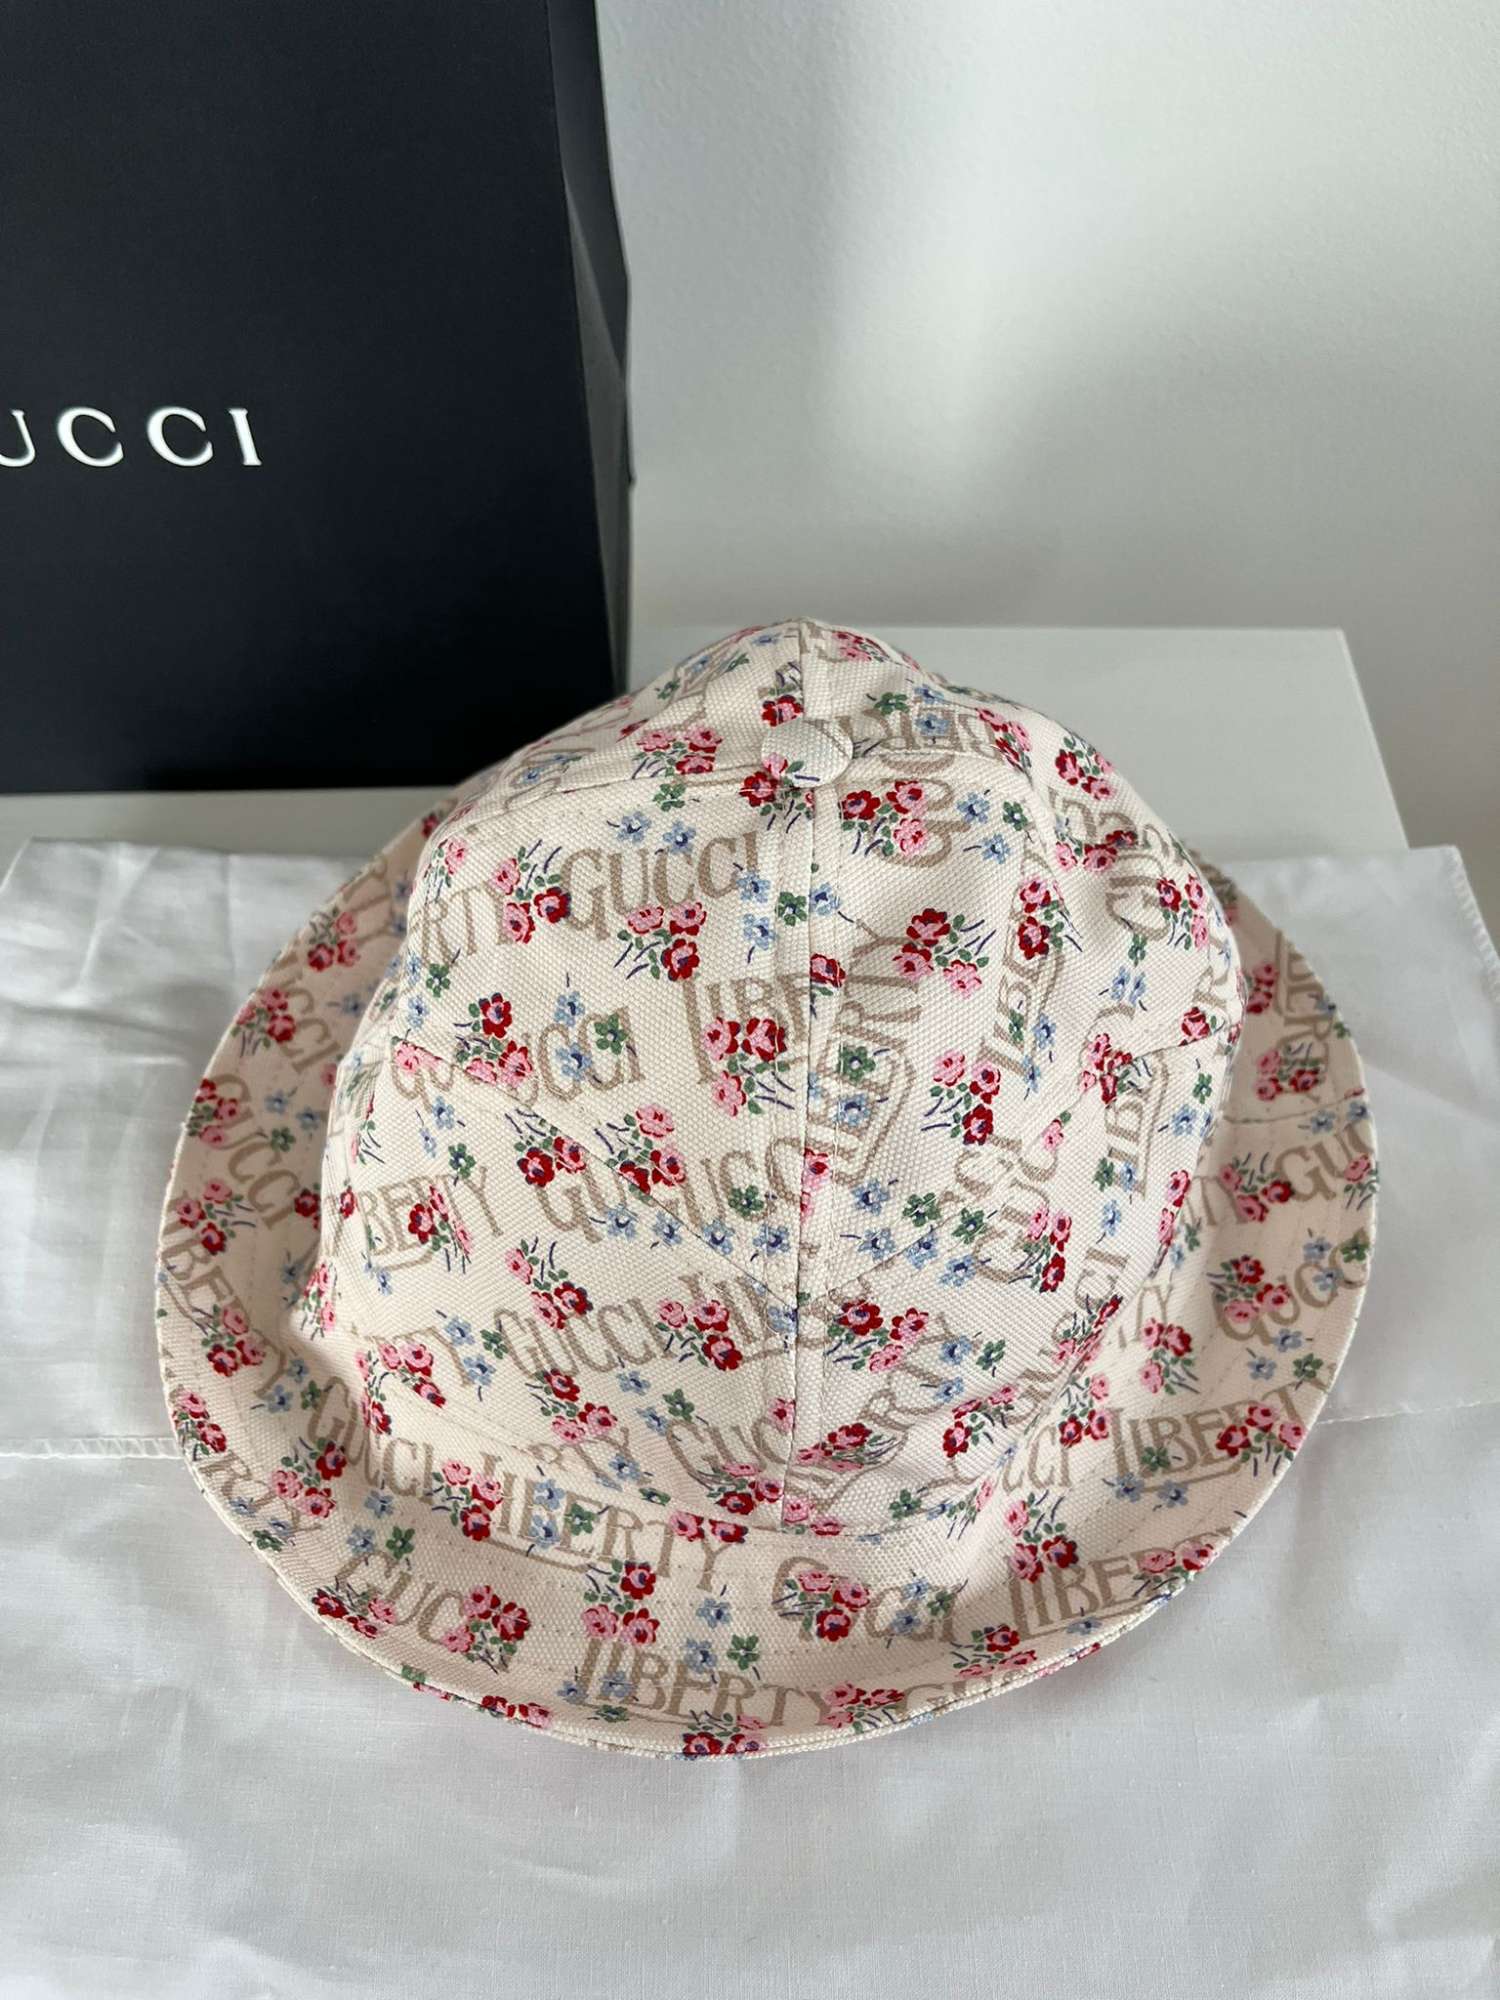 Gucci Liberty klobuk